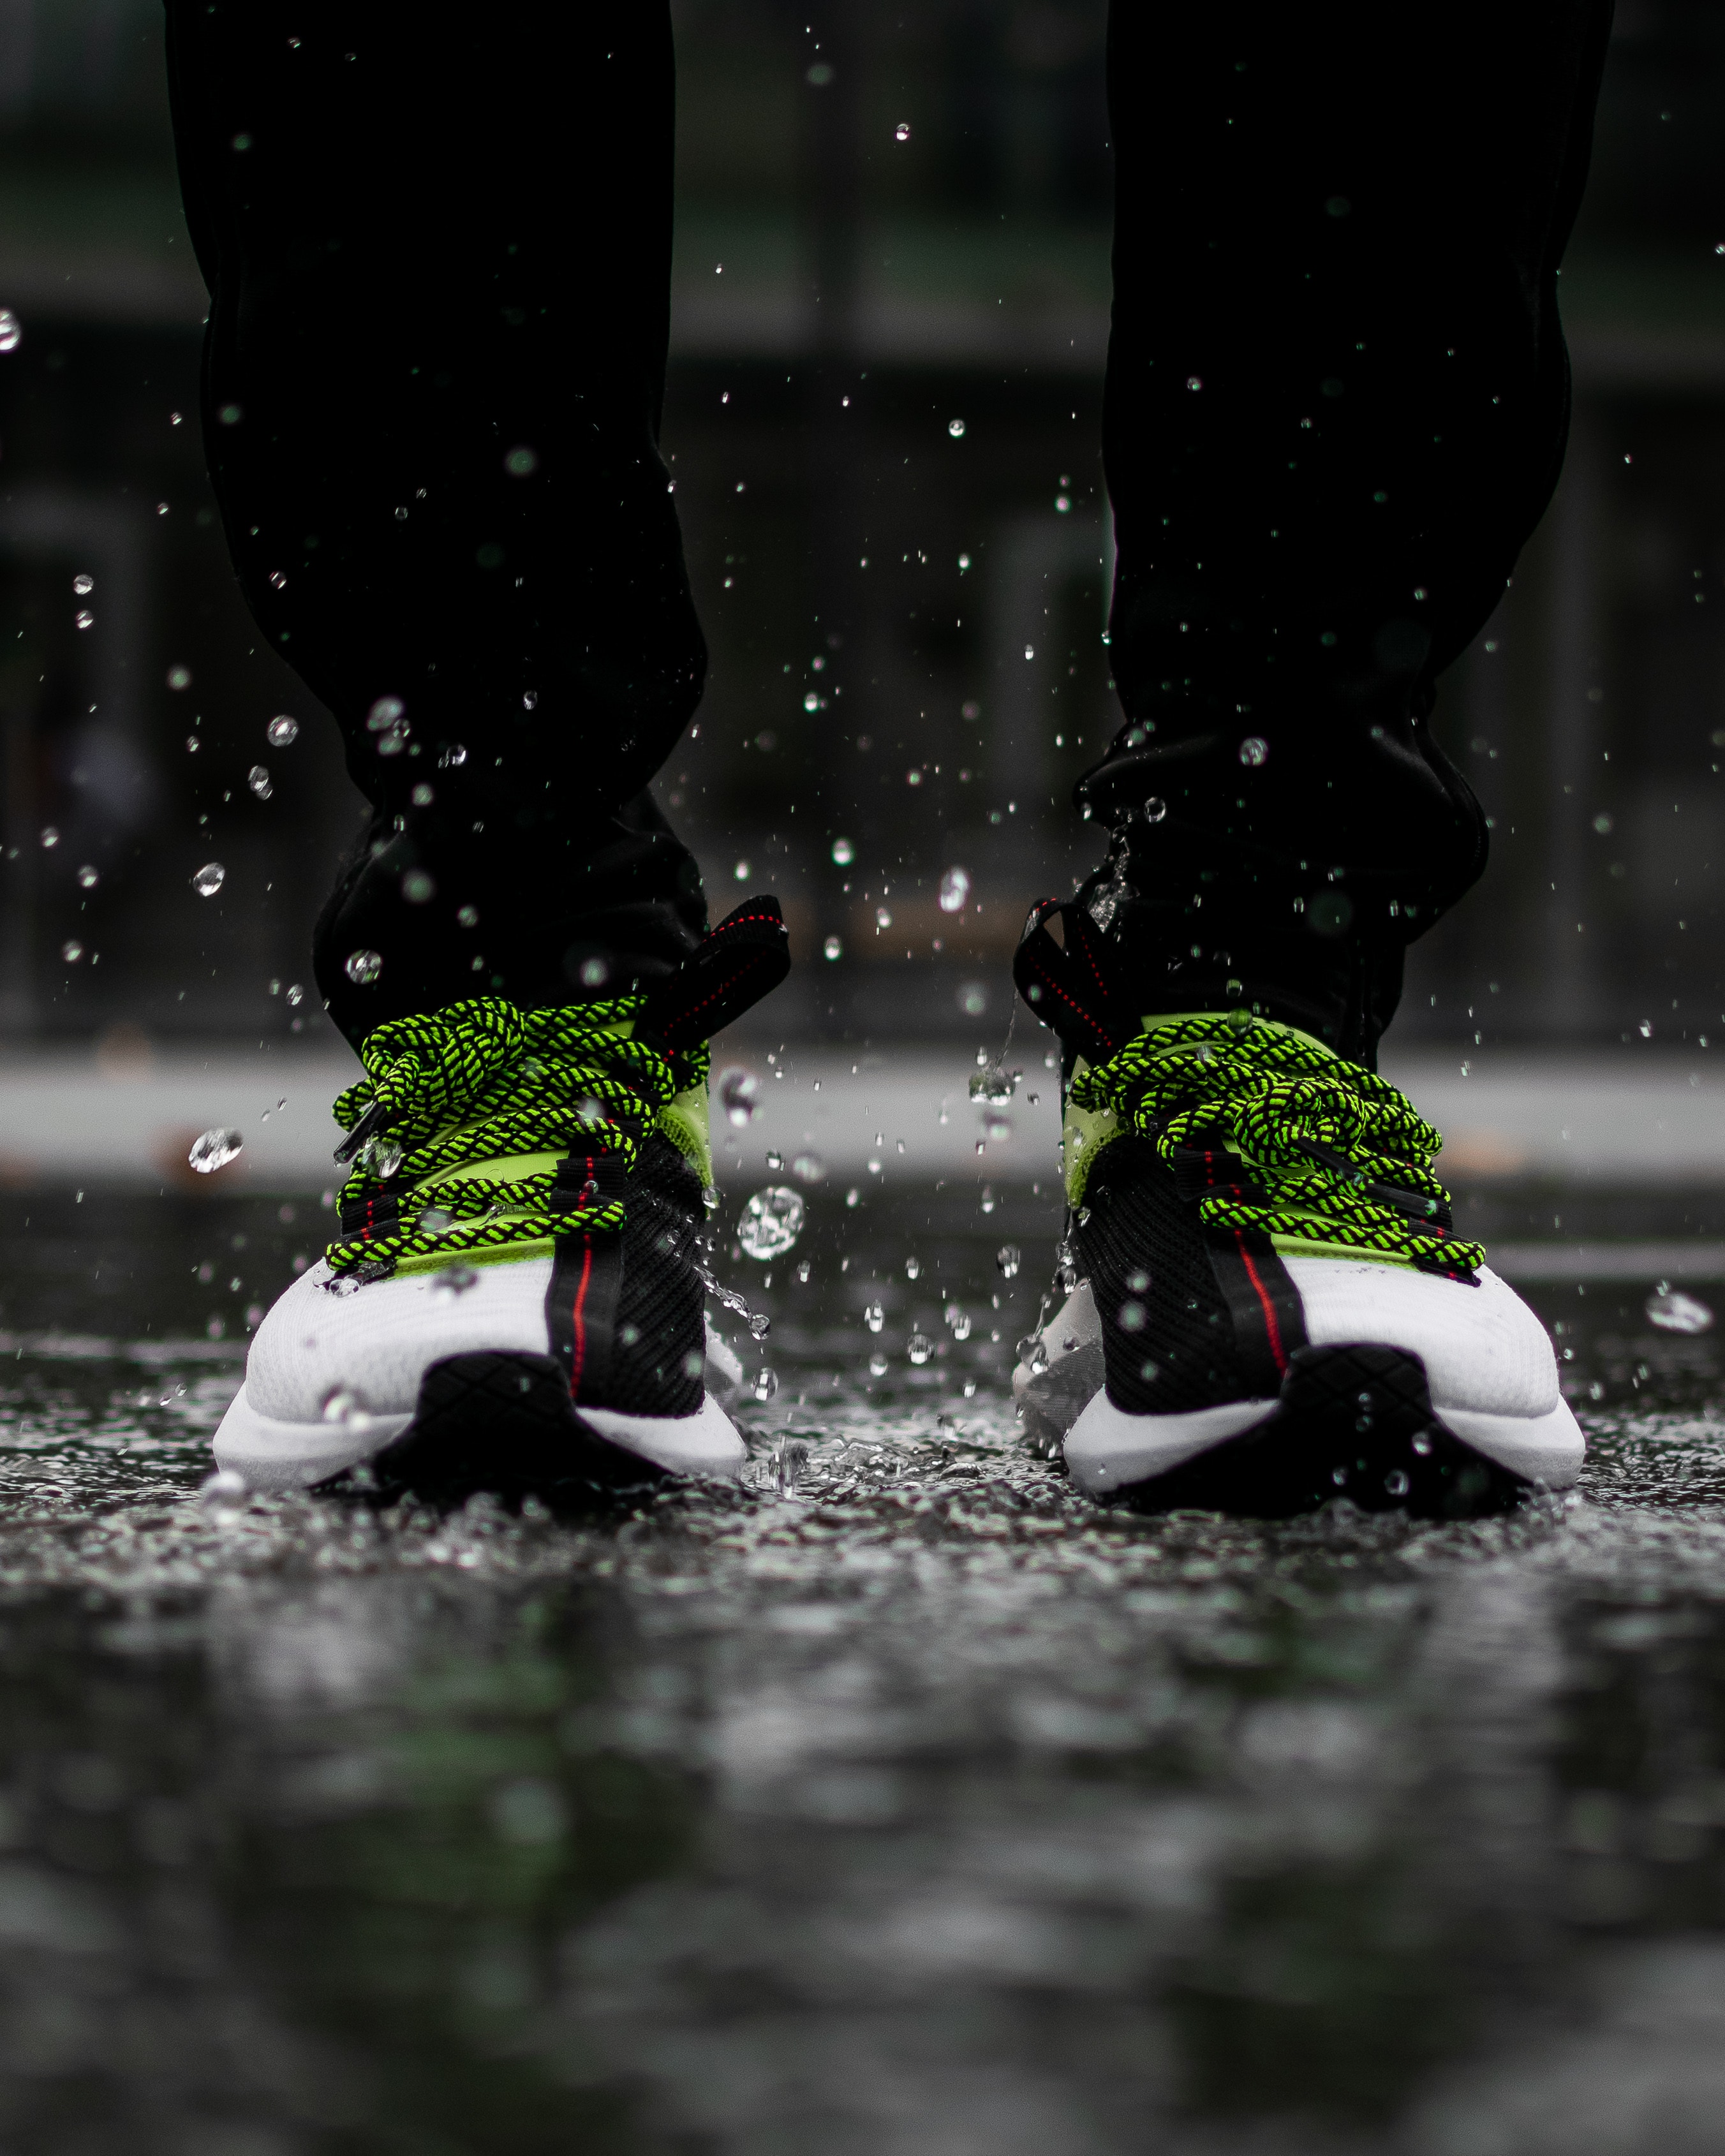 Ultra HD 4K miscellanea, footwear, spray, rain